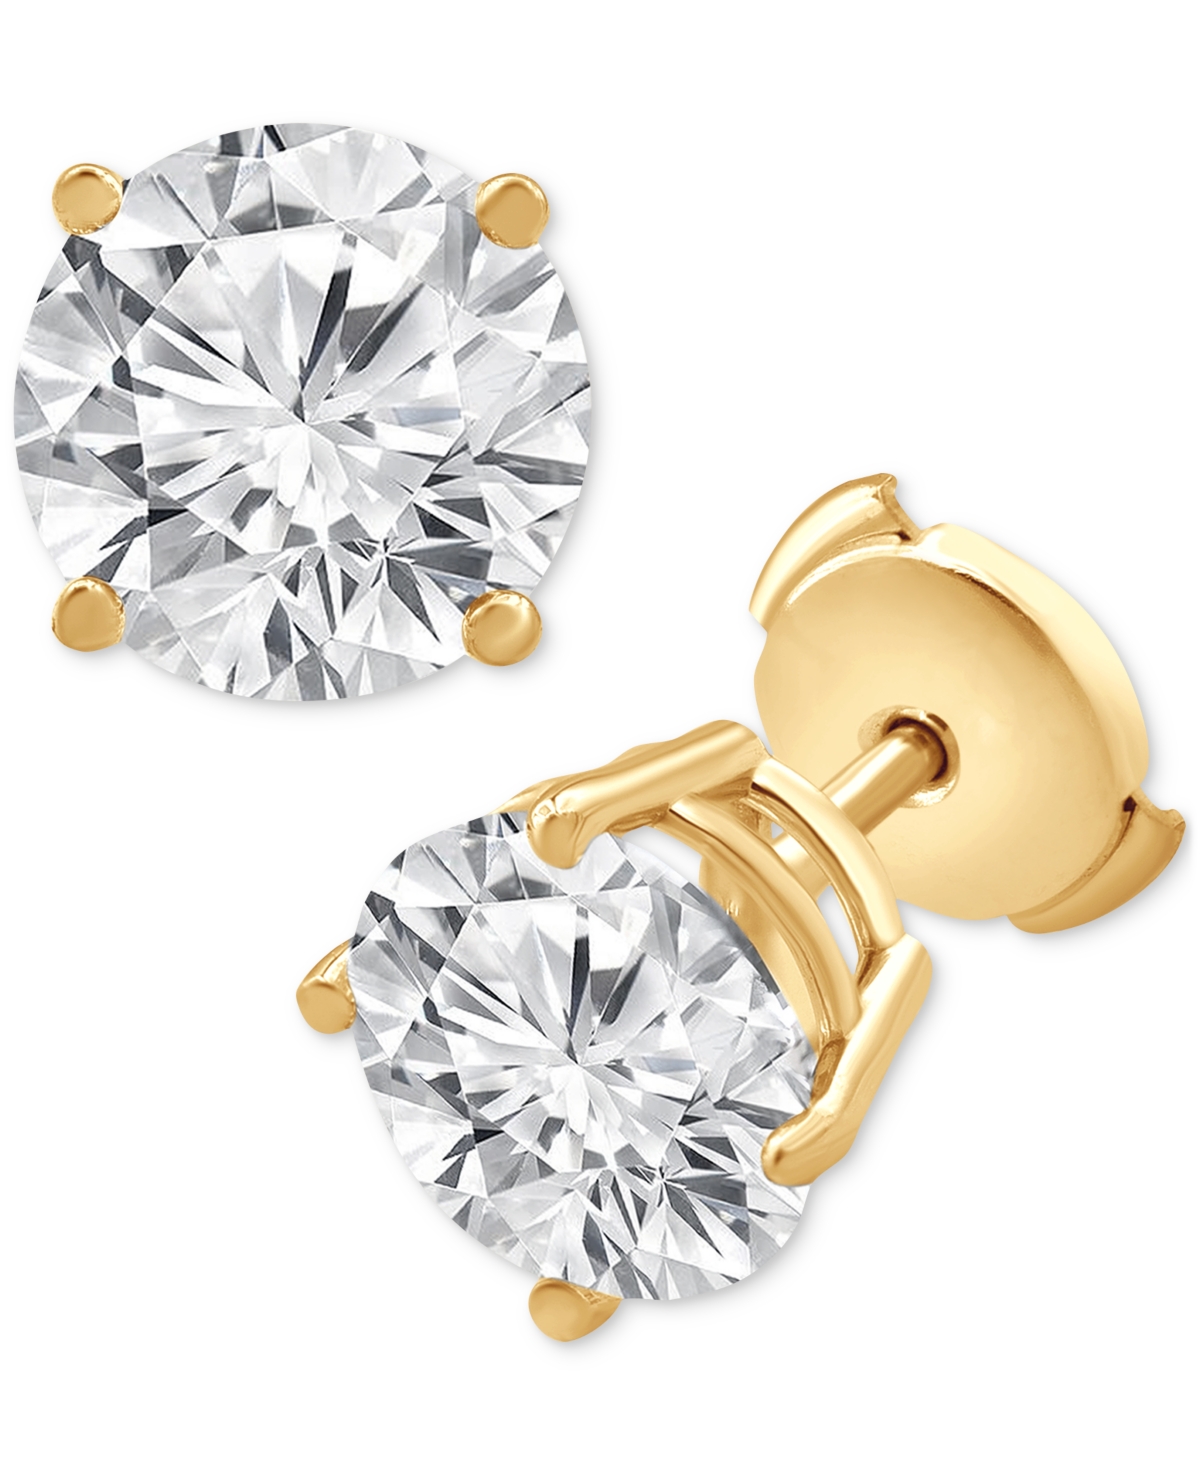 Certified Lab Grown Diamond Stud Earrings (6 ct. t.w.) in 14k Gold - White Gold